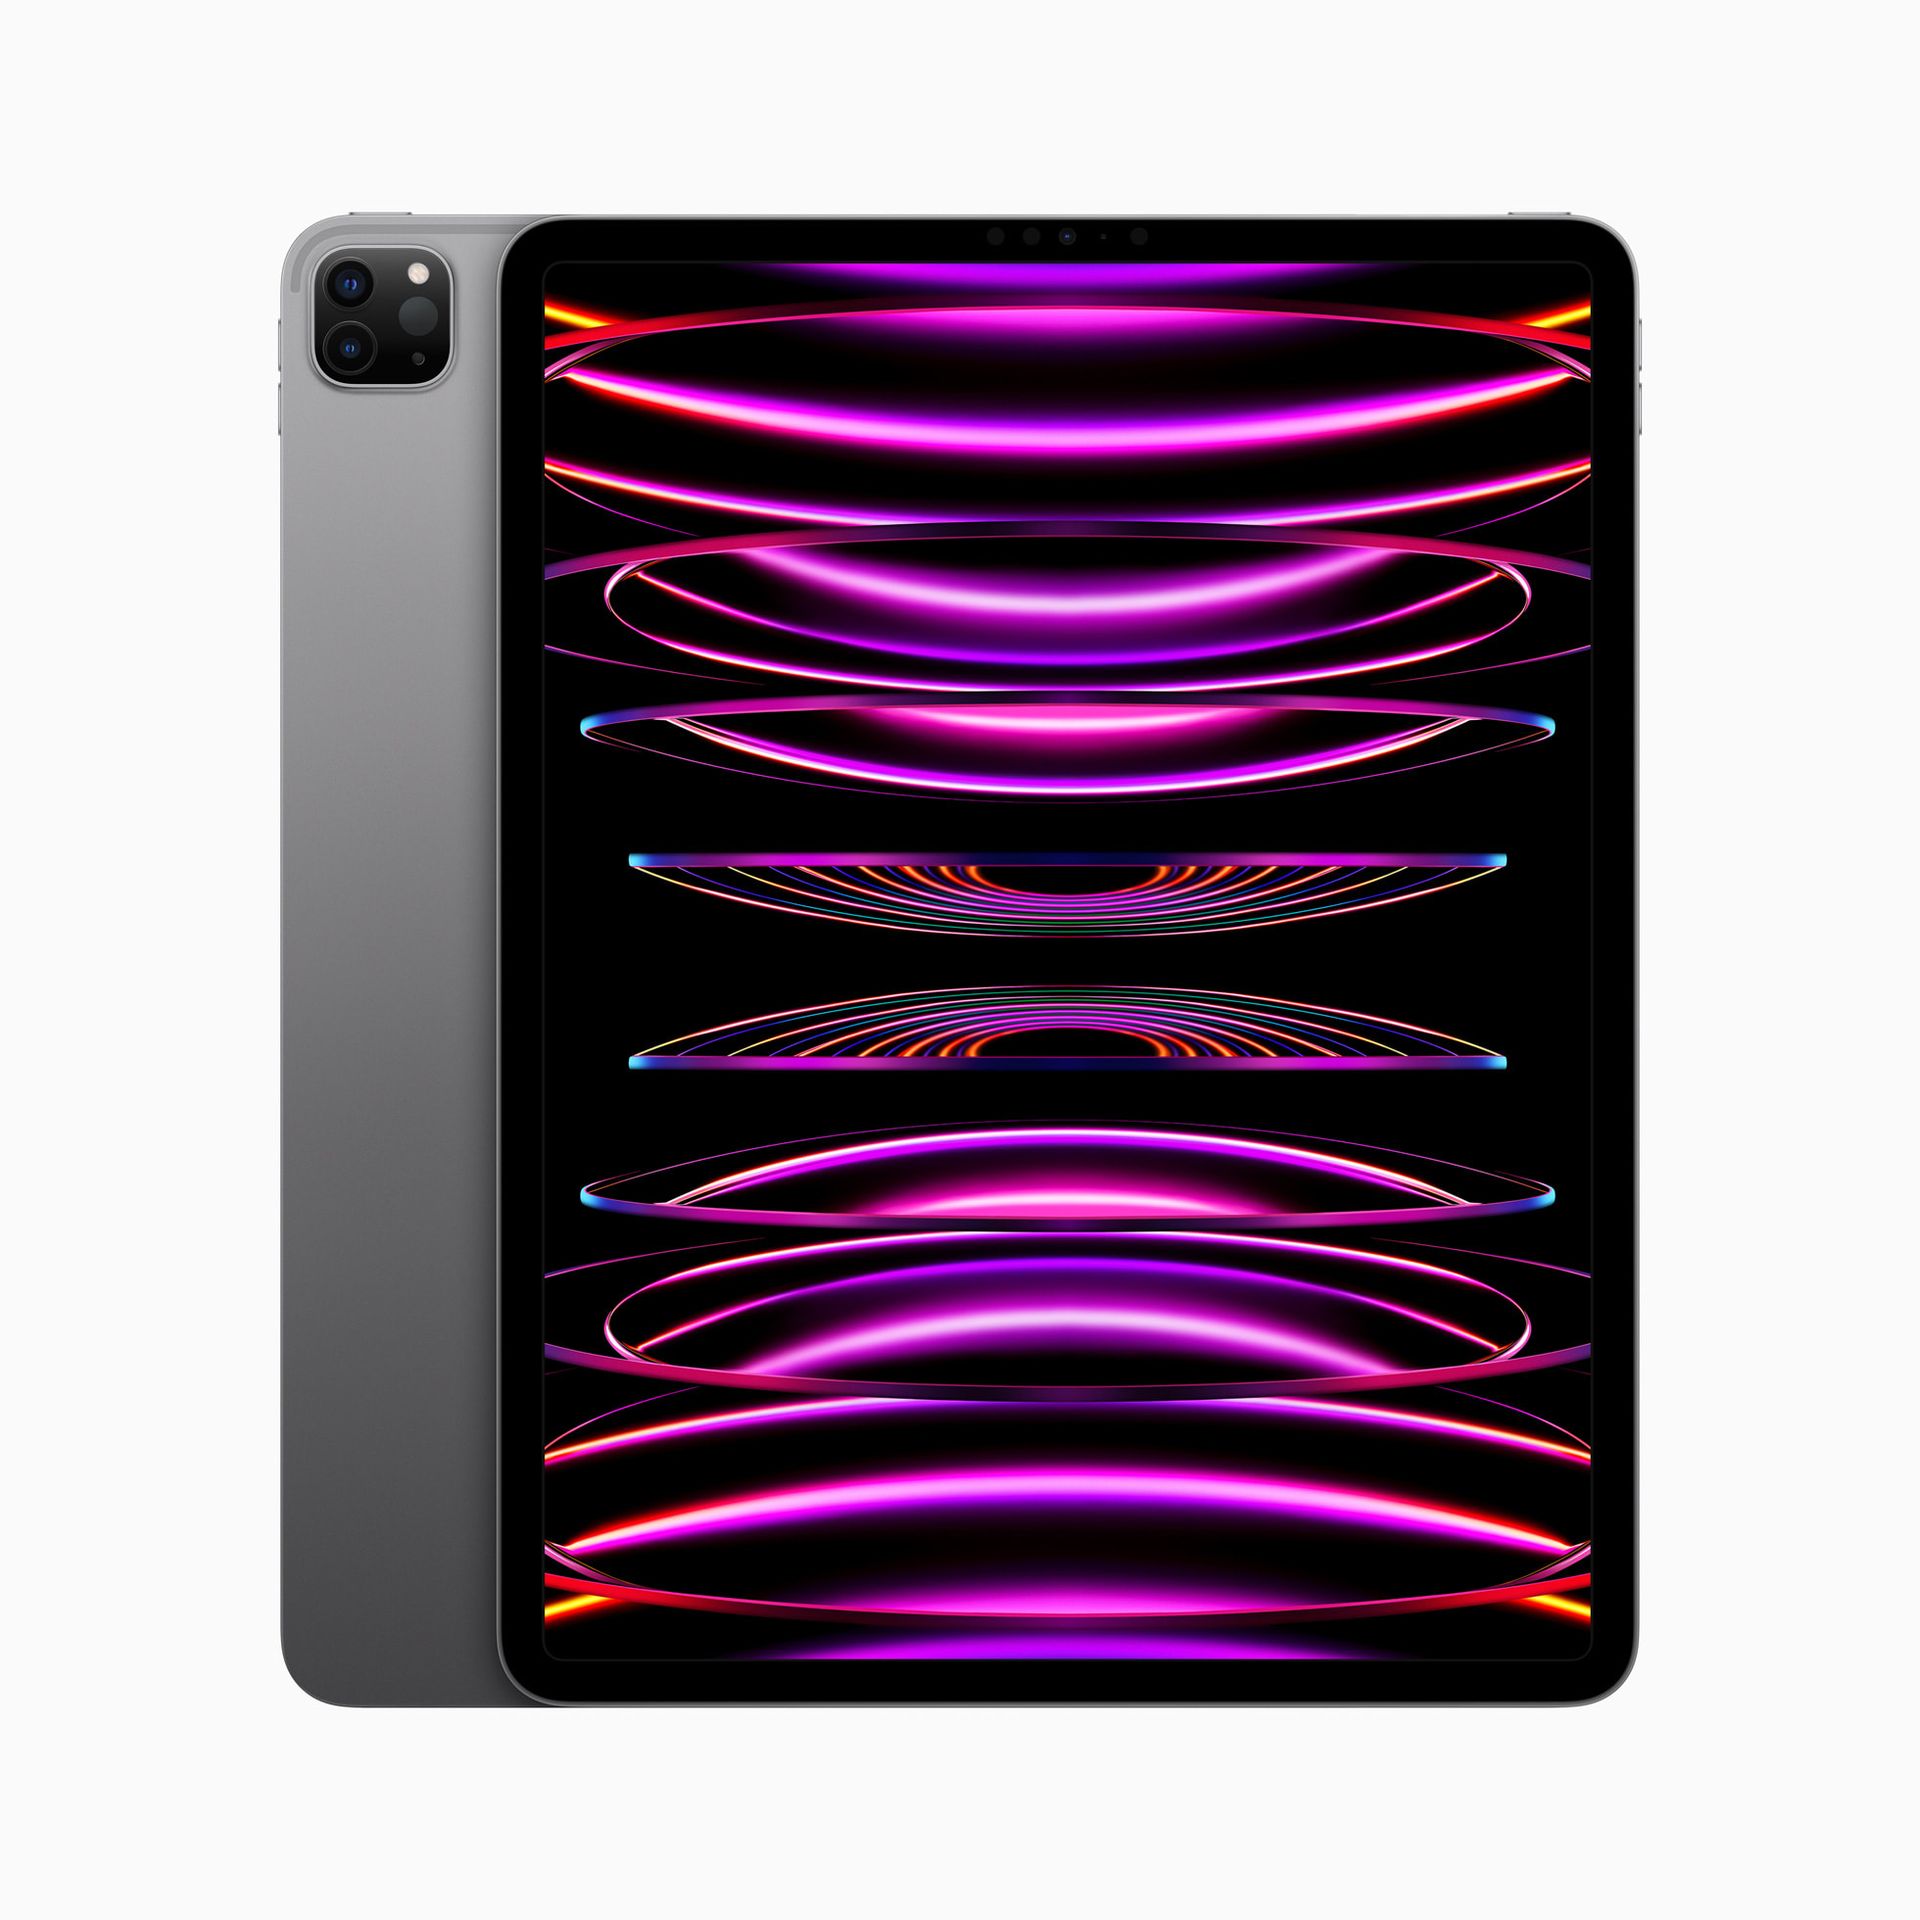 iPad Pro M2 wordt onthuld: specificaties, prijs en releasedatum